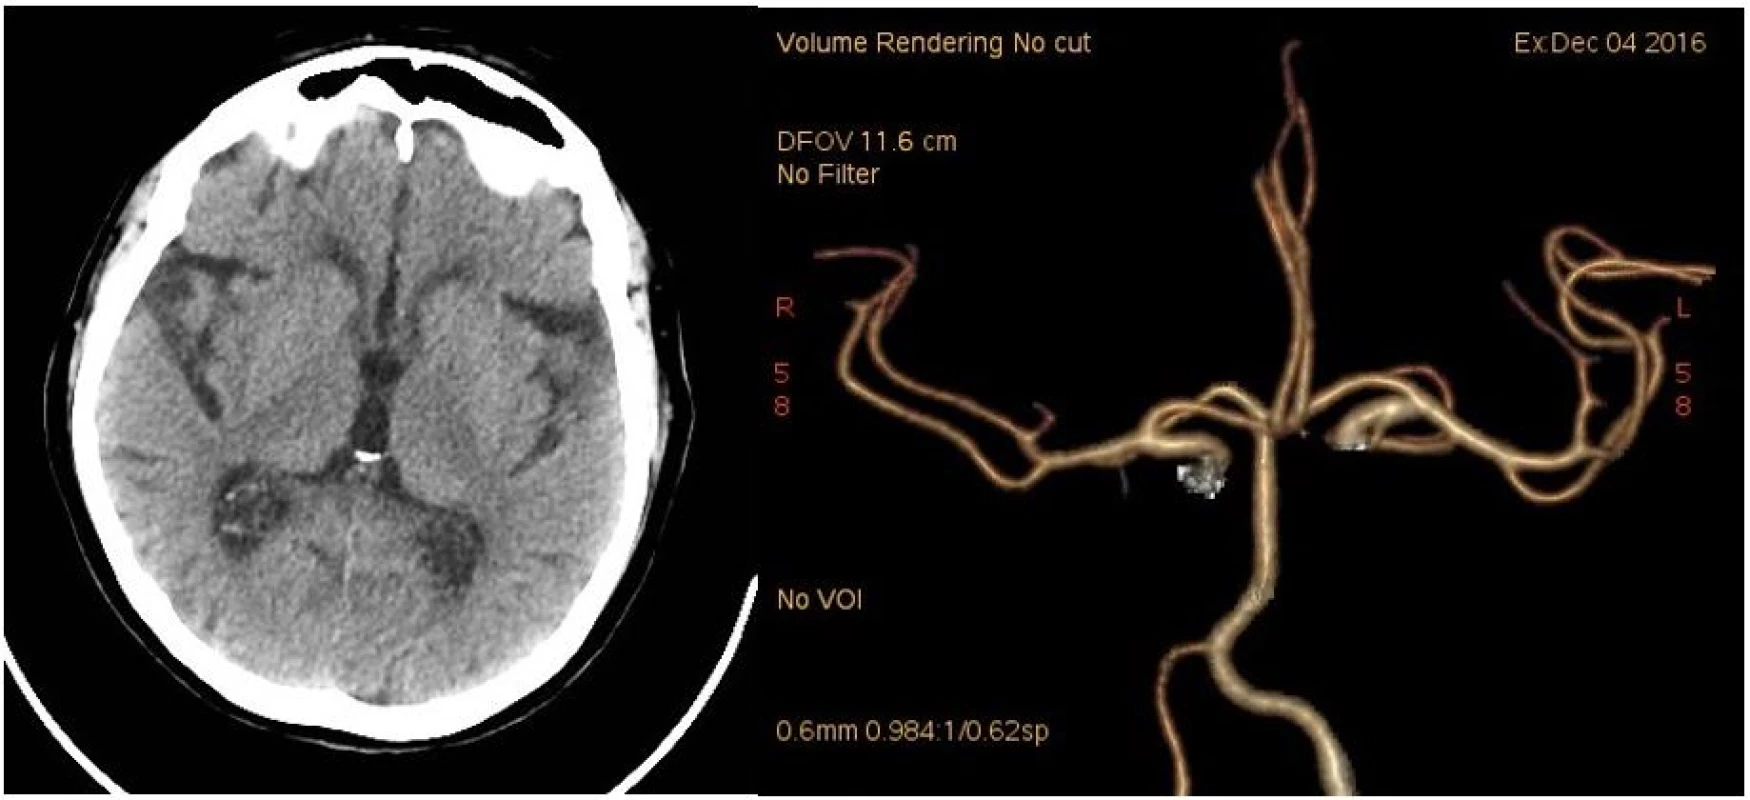 CT mozku při přijetí. 1A: nativ. 1B: CT angiografie (Volume Rendering Technique).